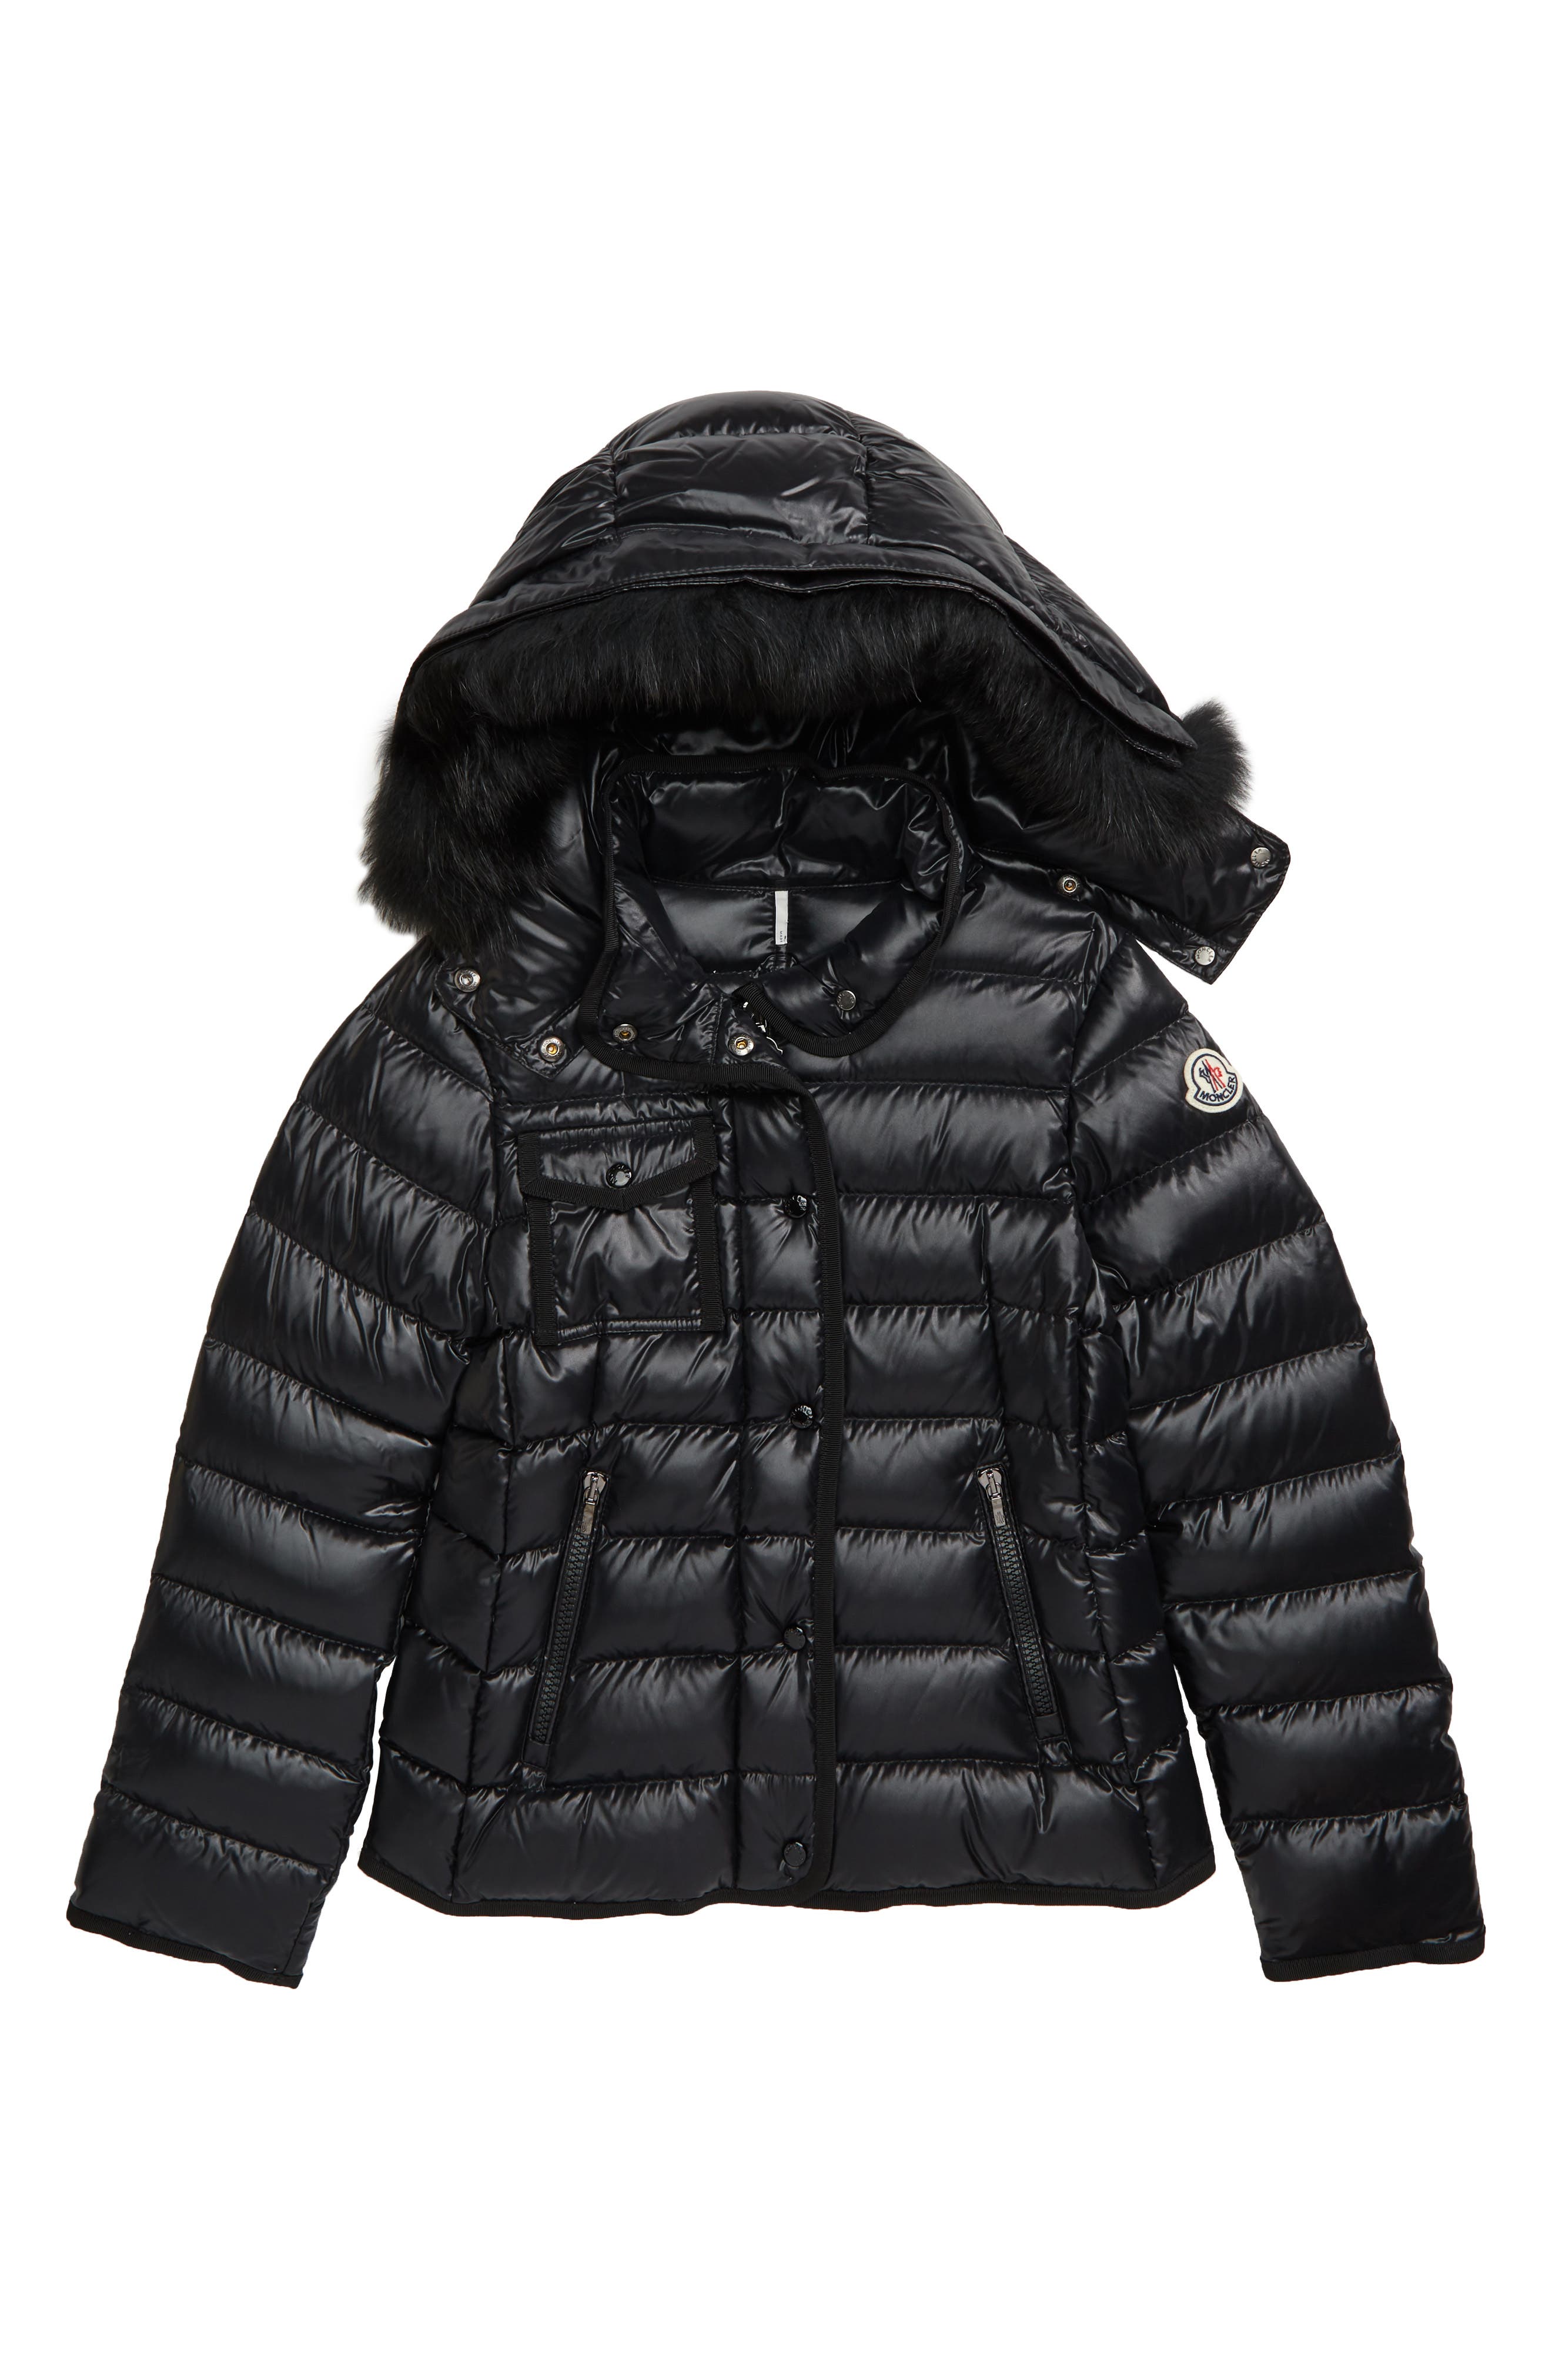 ATHEMEET Toddler Kids Cute Light Quilted Winter Coat Puffer Down Winter Hooded Jcaket with Zipper